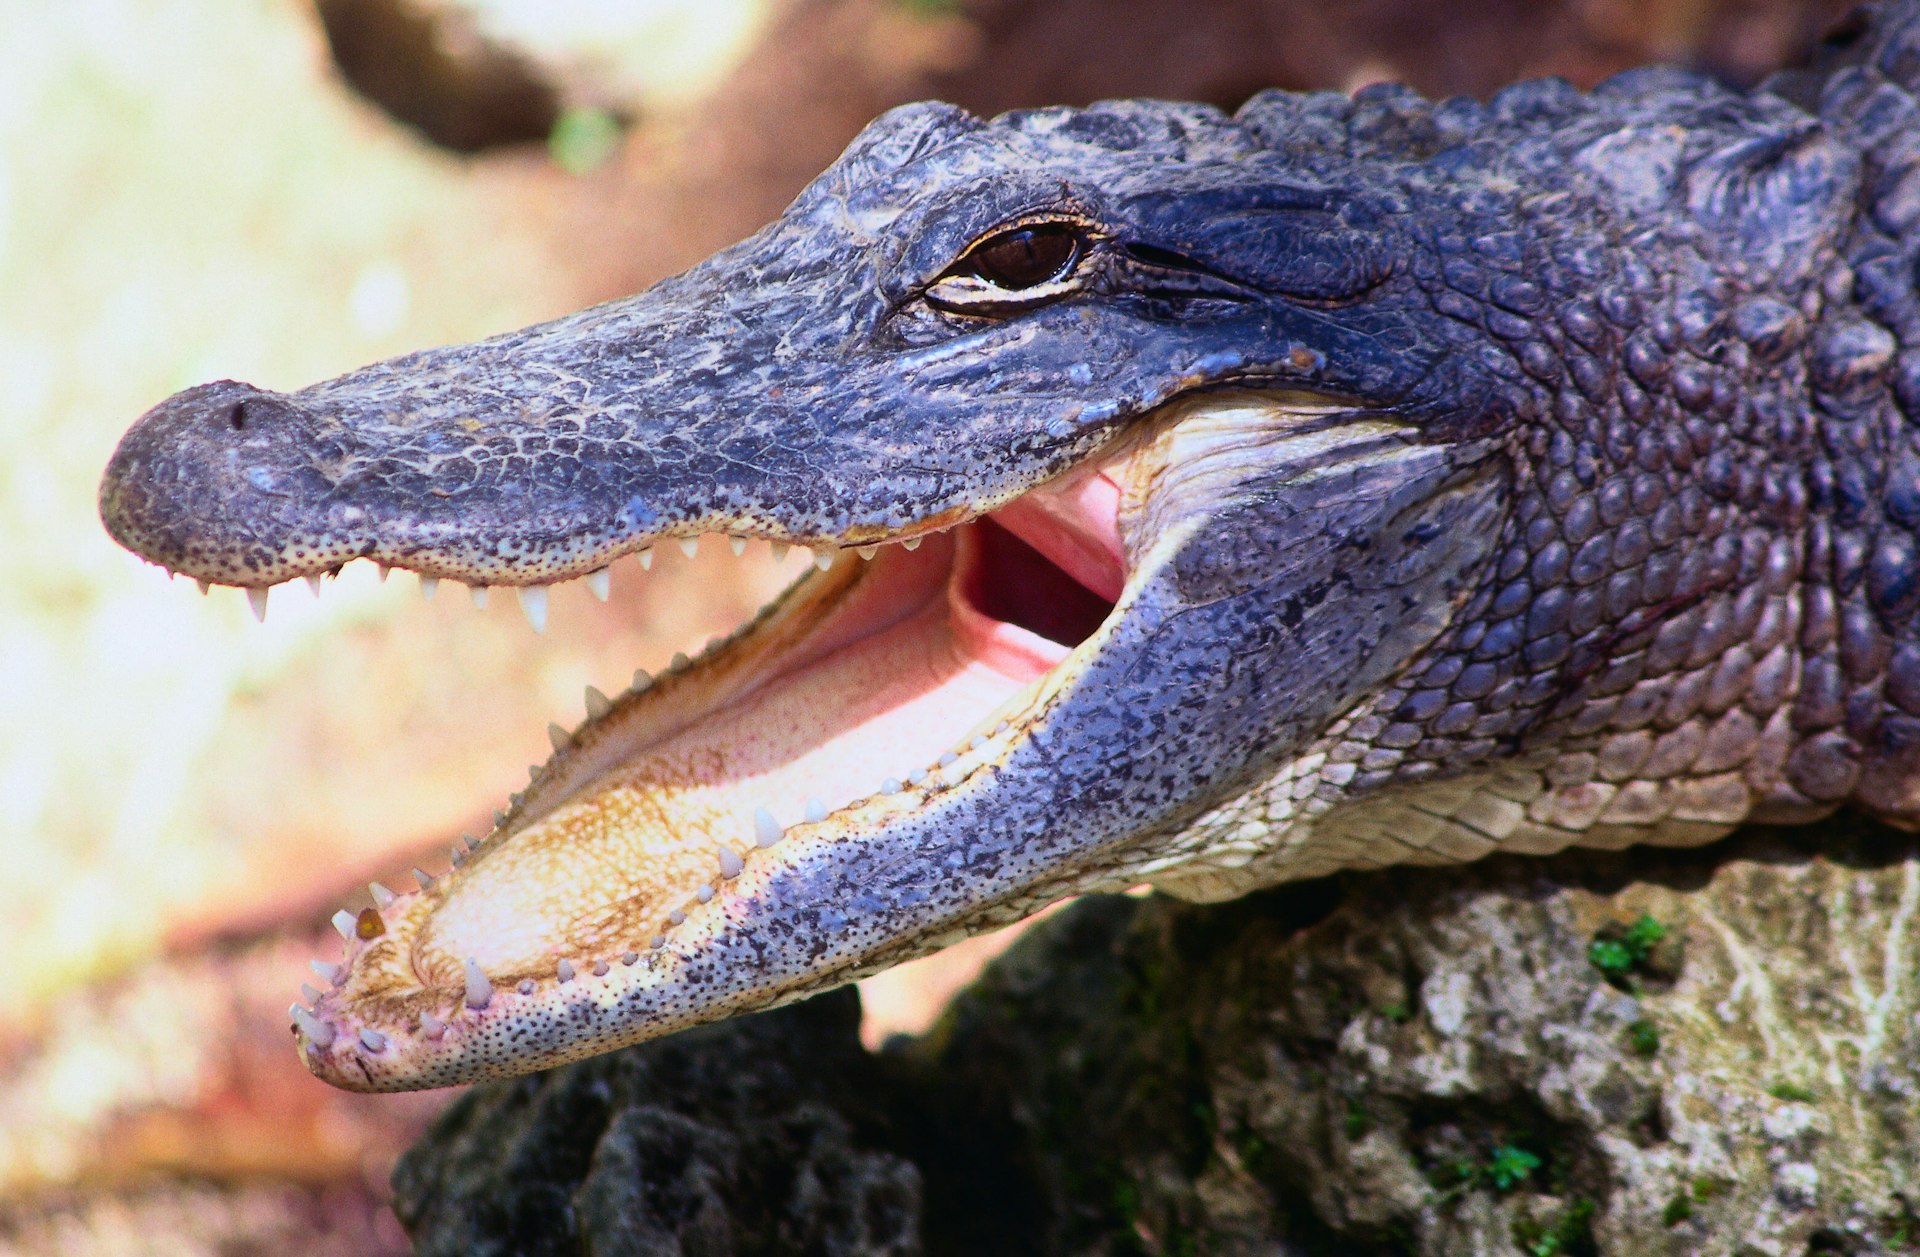 a yawning alligator